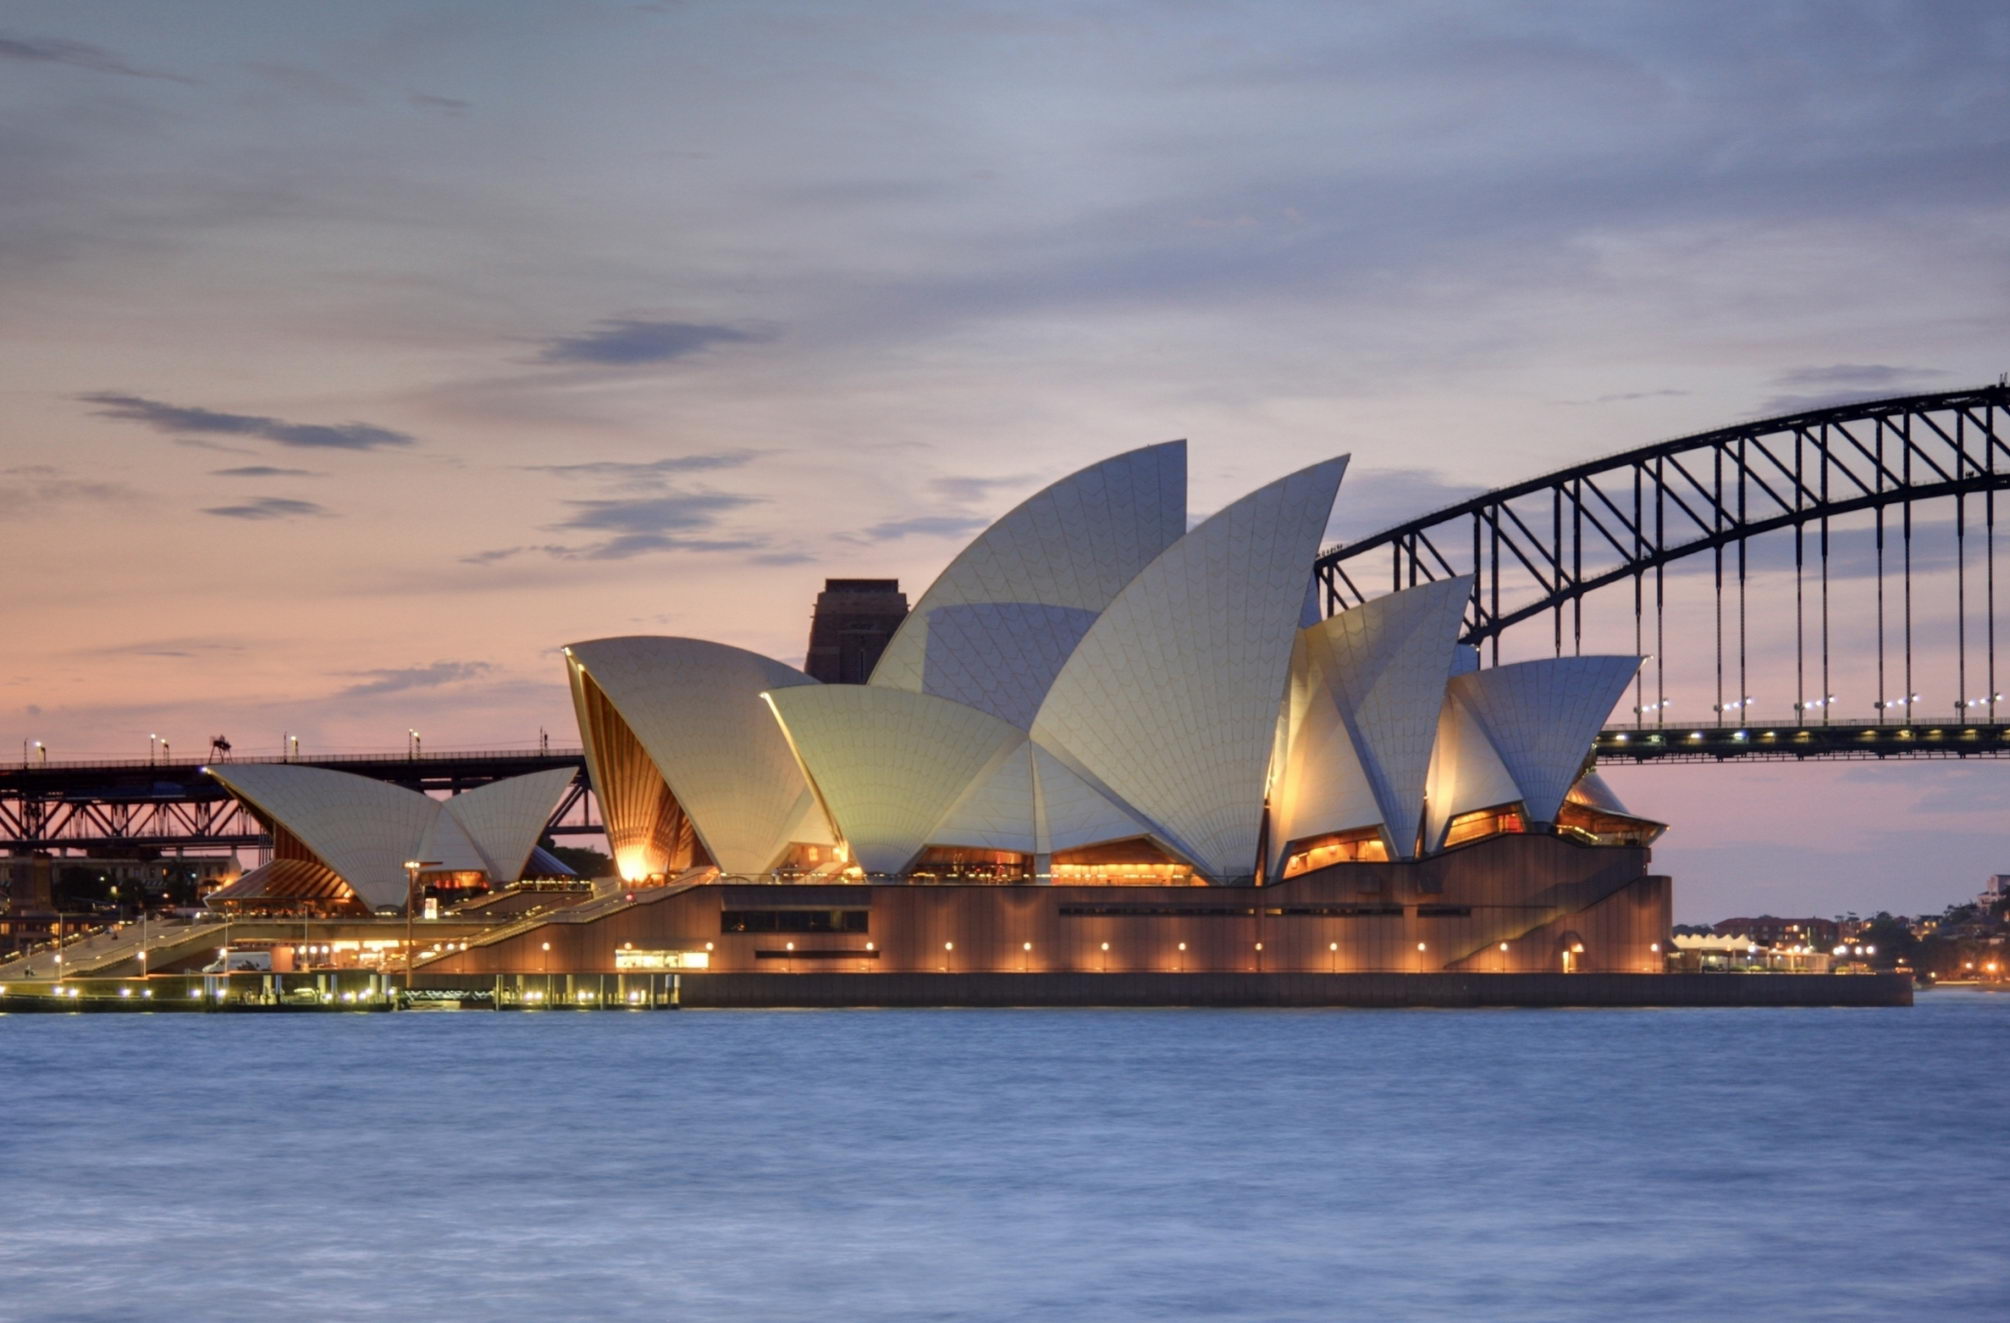 【携程攻略】悉尼悉尼歌剧院景点,悉尼歌剧院在悉尼历史地段的港口位置，可以看到悉尼港大桥，举办的歌…